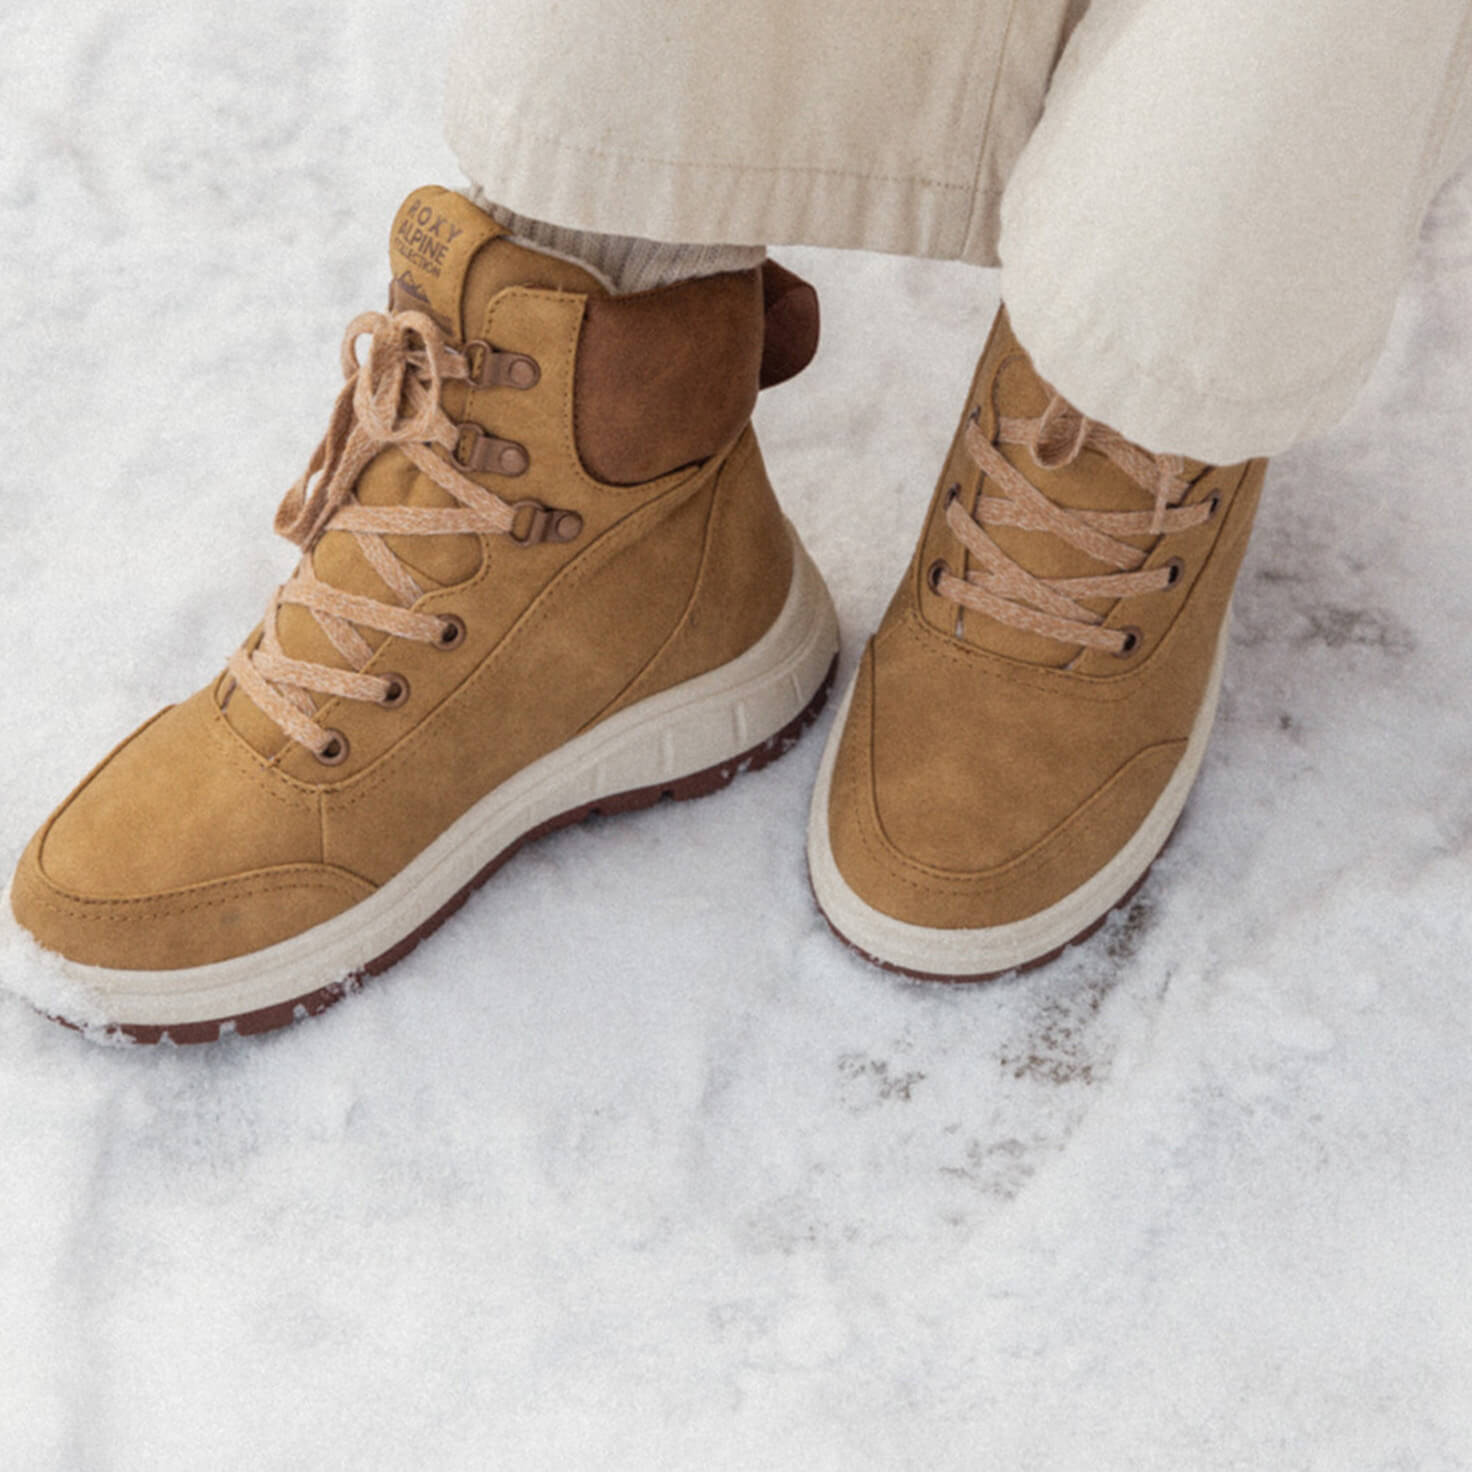 Roxy Karmel Women's Snow/Winter Boots